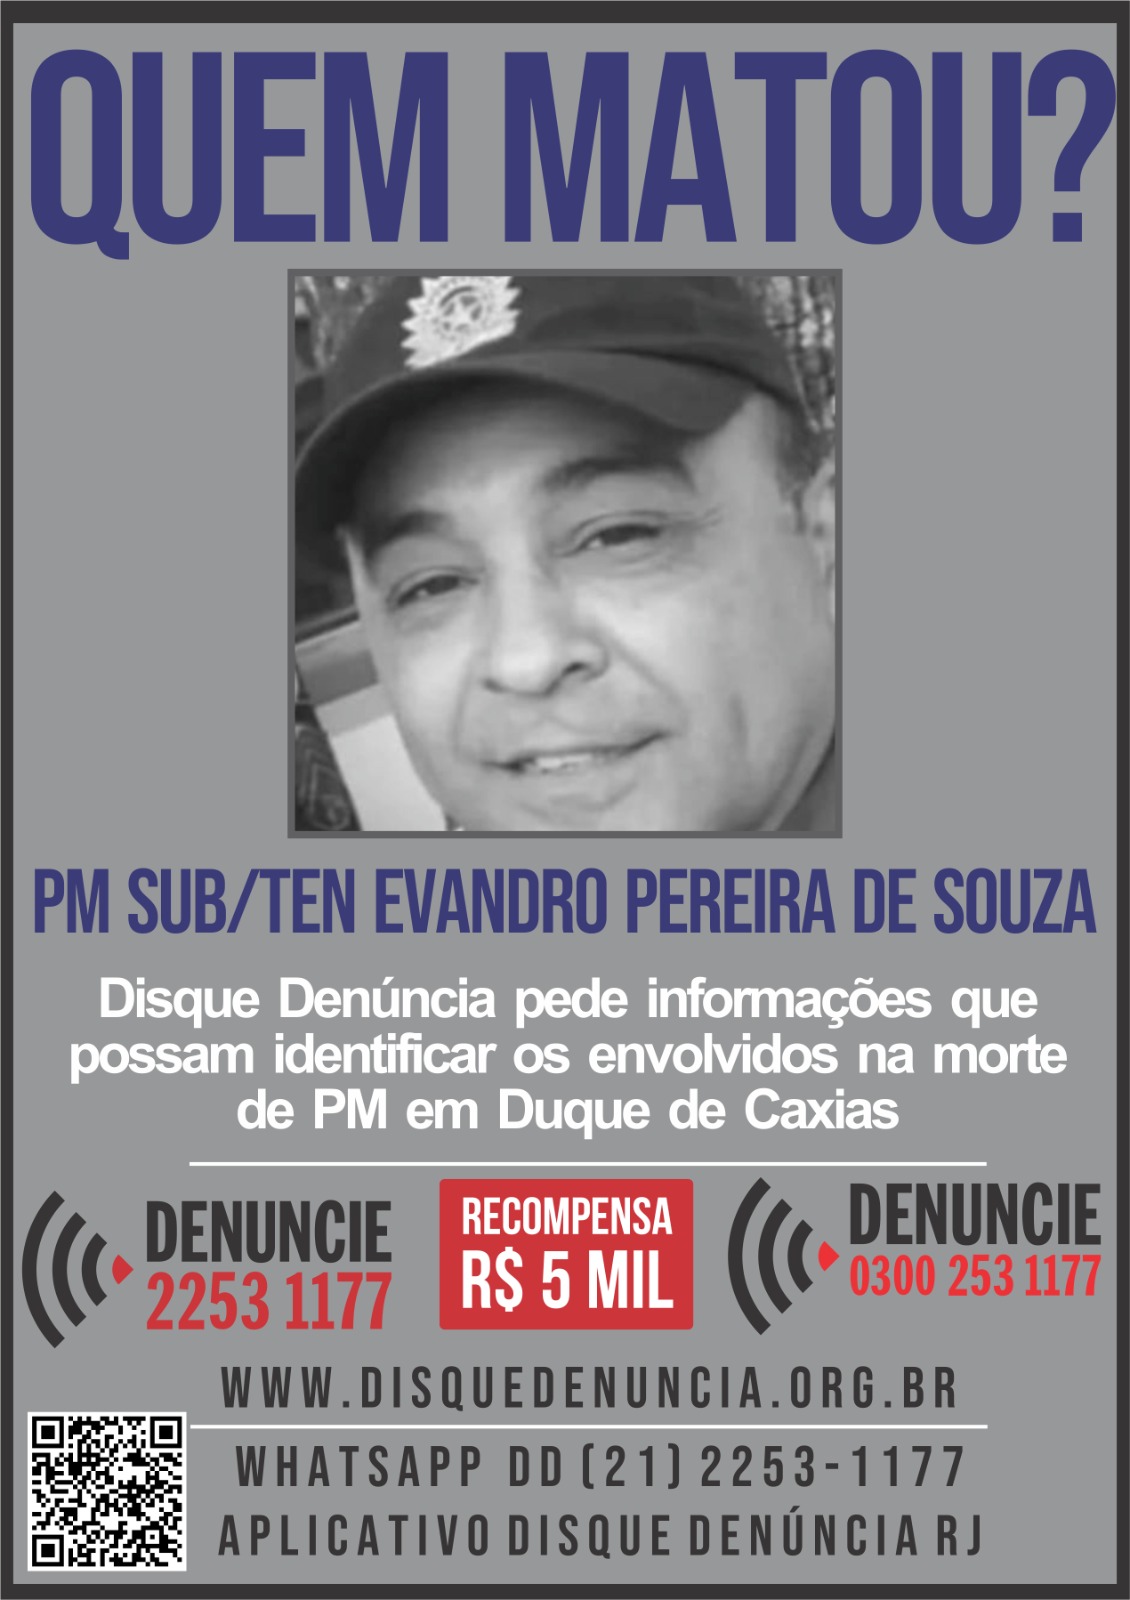 Disque Denúncia divulga cartaz pedindo informações sobre envolvidos em morte de policial de folga em Duque de Caxias